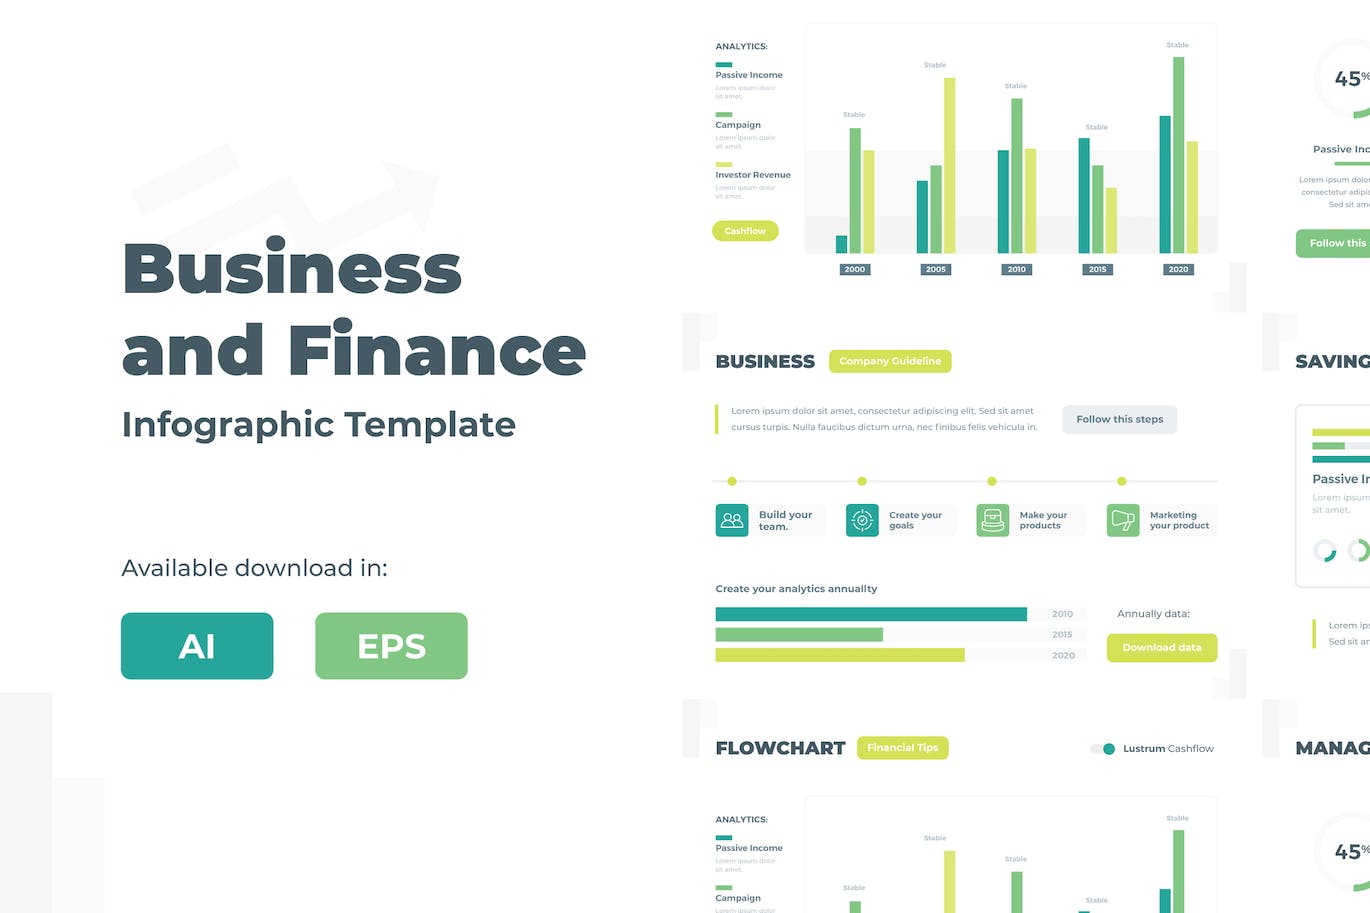 业务和财务信息图表设计模板 Business and Finance Infographic Template 幻灯图表 第1张